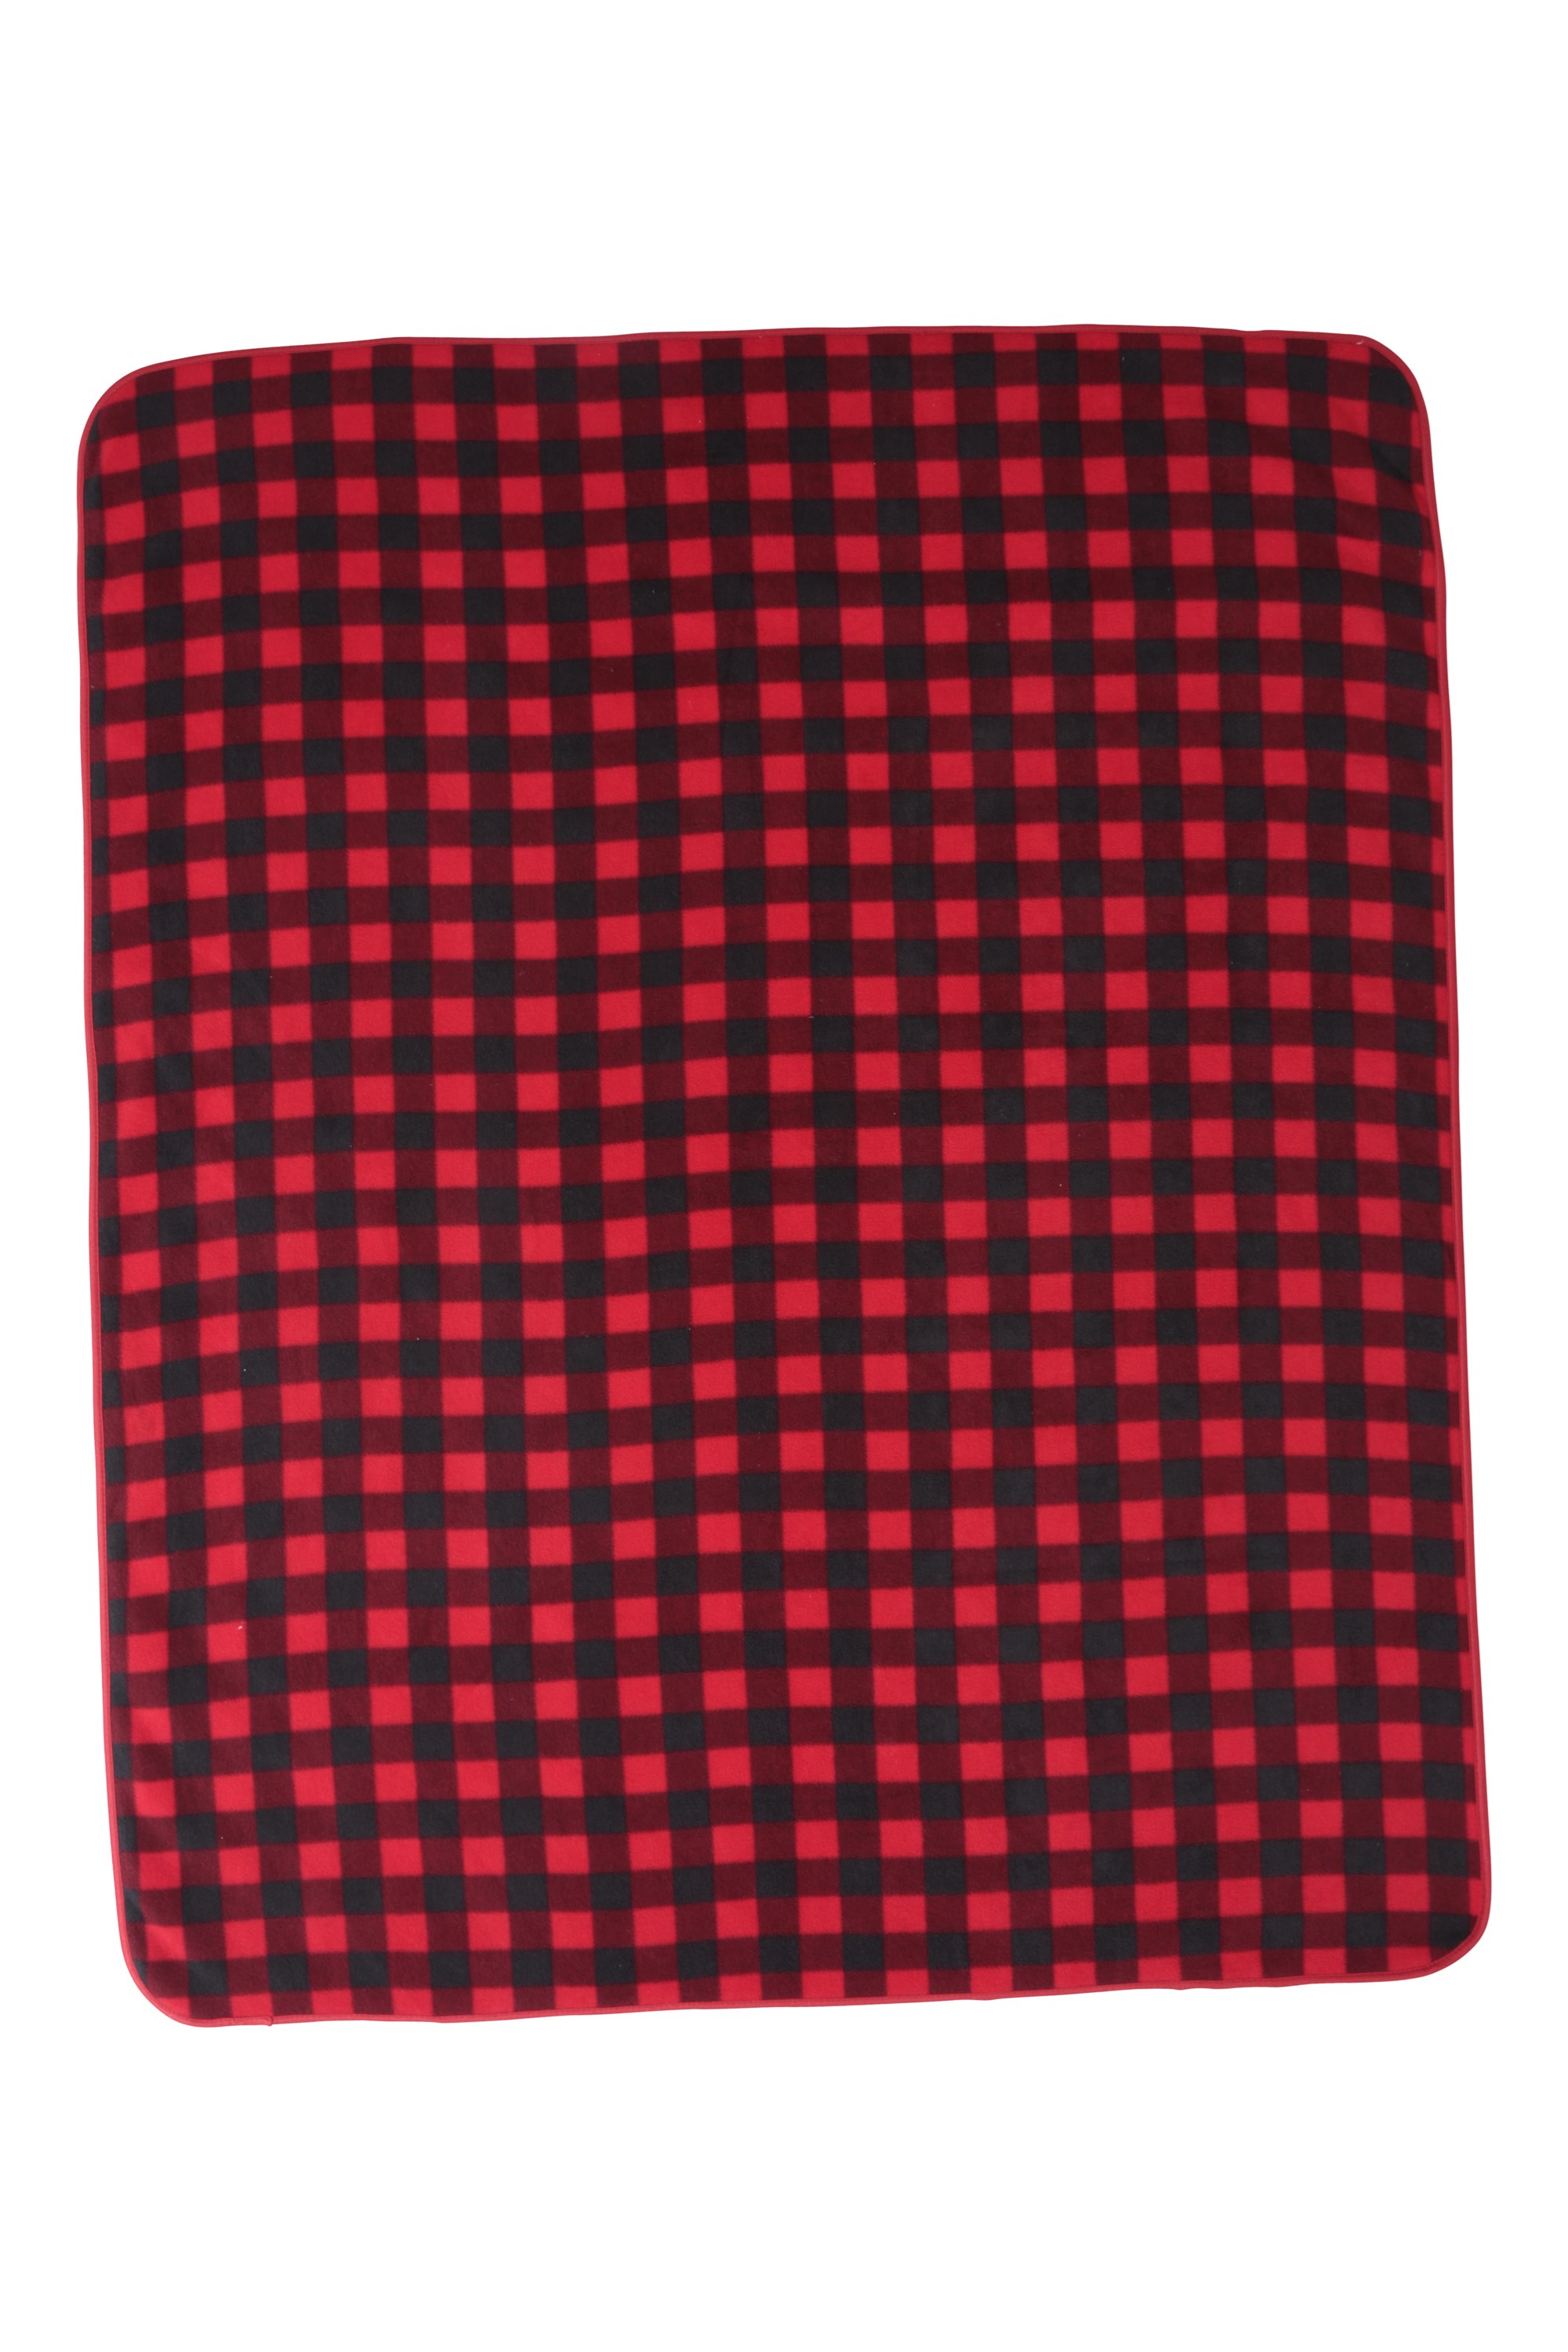 Patterned Double Fleece Blanket - 120 x 150cm - Black